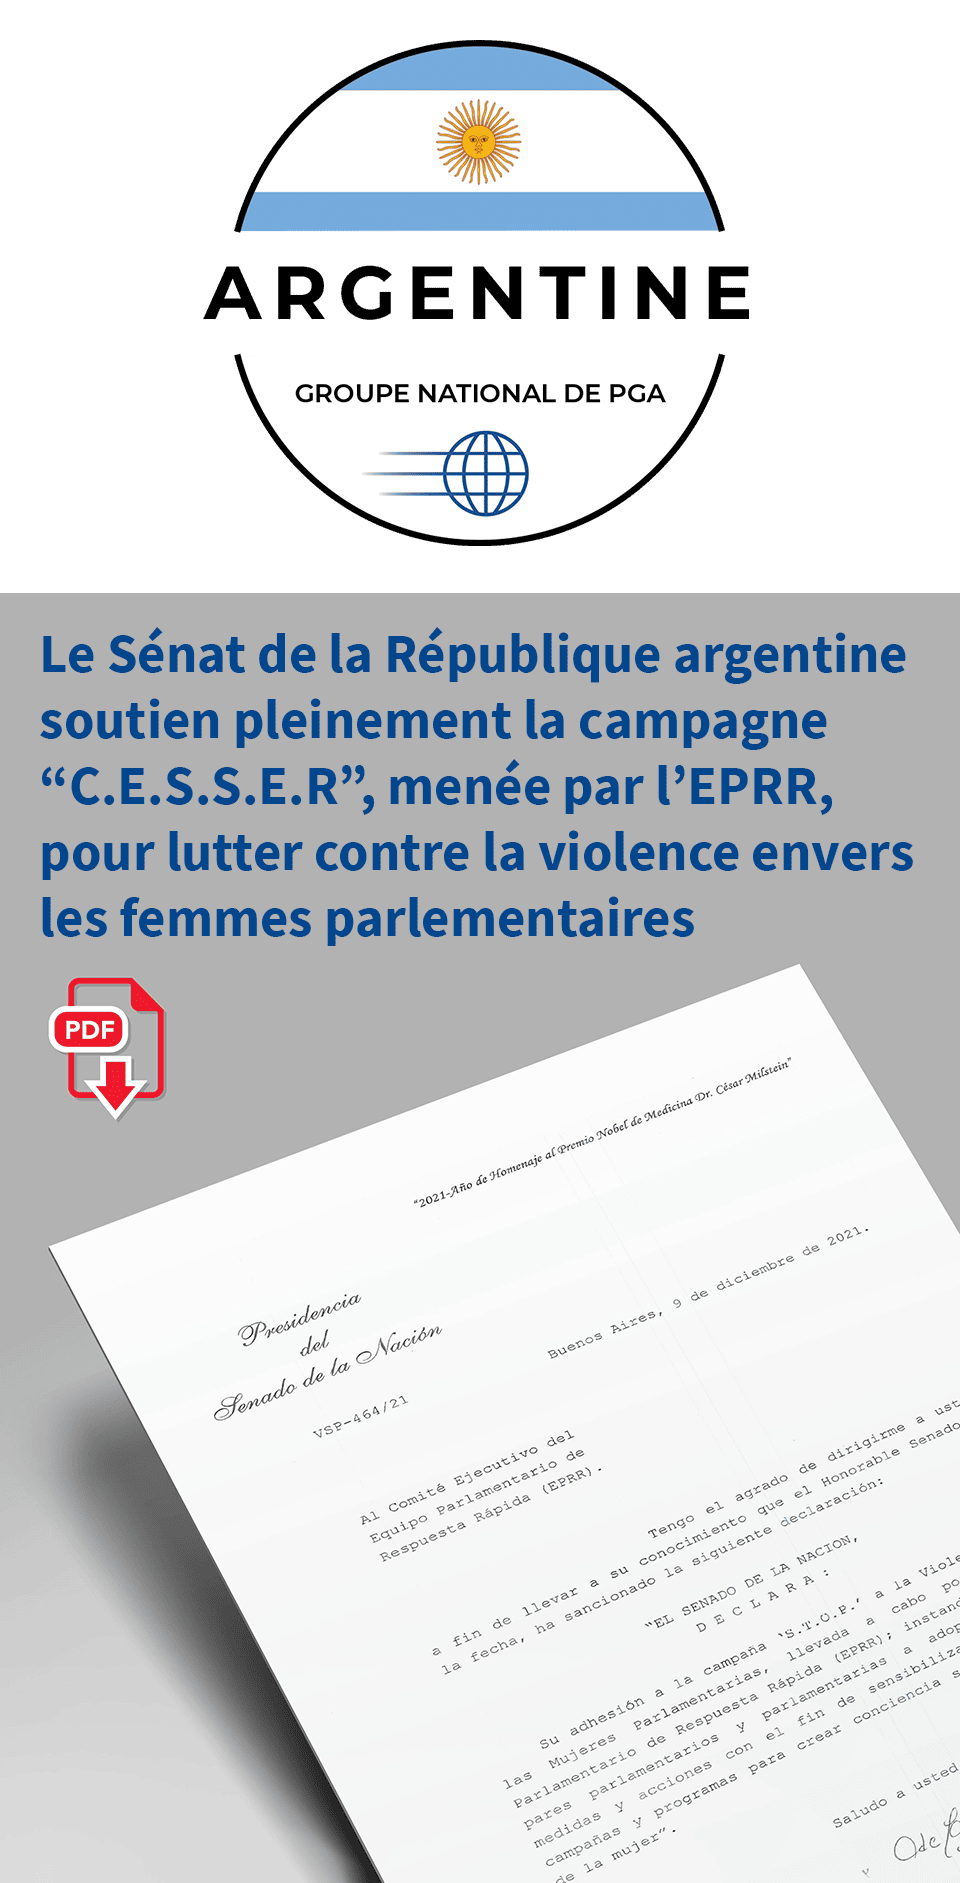 Le Sénat de la République argentine soutien pleinement la campagne “C.E.S.S.E.R”, menée par l’EPRR, pour lutter contre la violence envers les femmes parlementaires